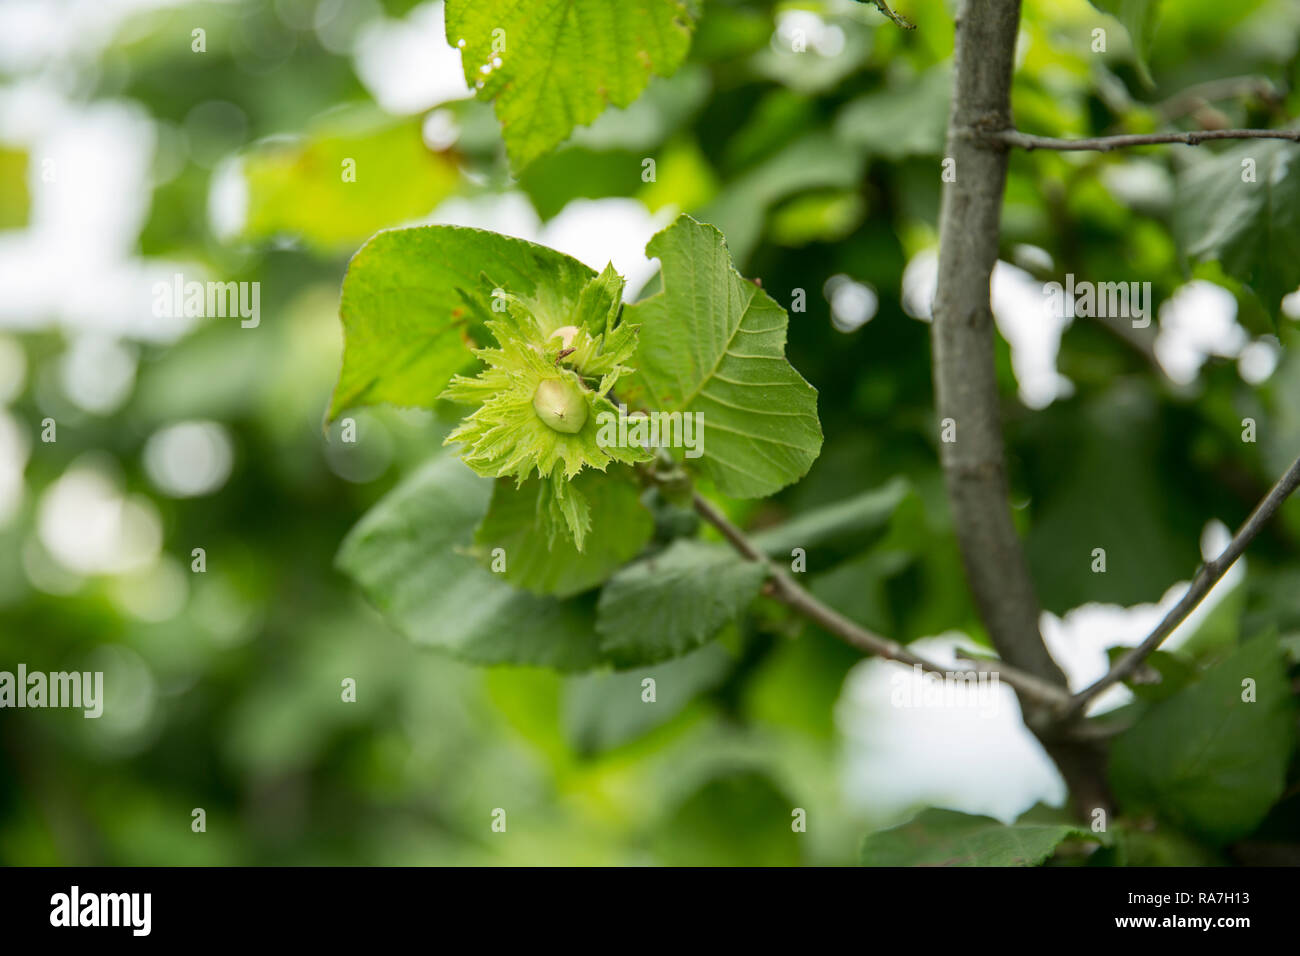 A small hazelnut grows on a hazelnut tree Stock Photo